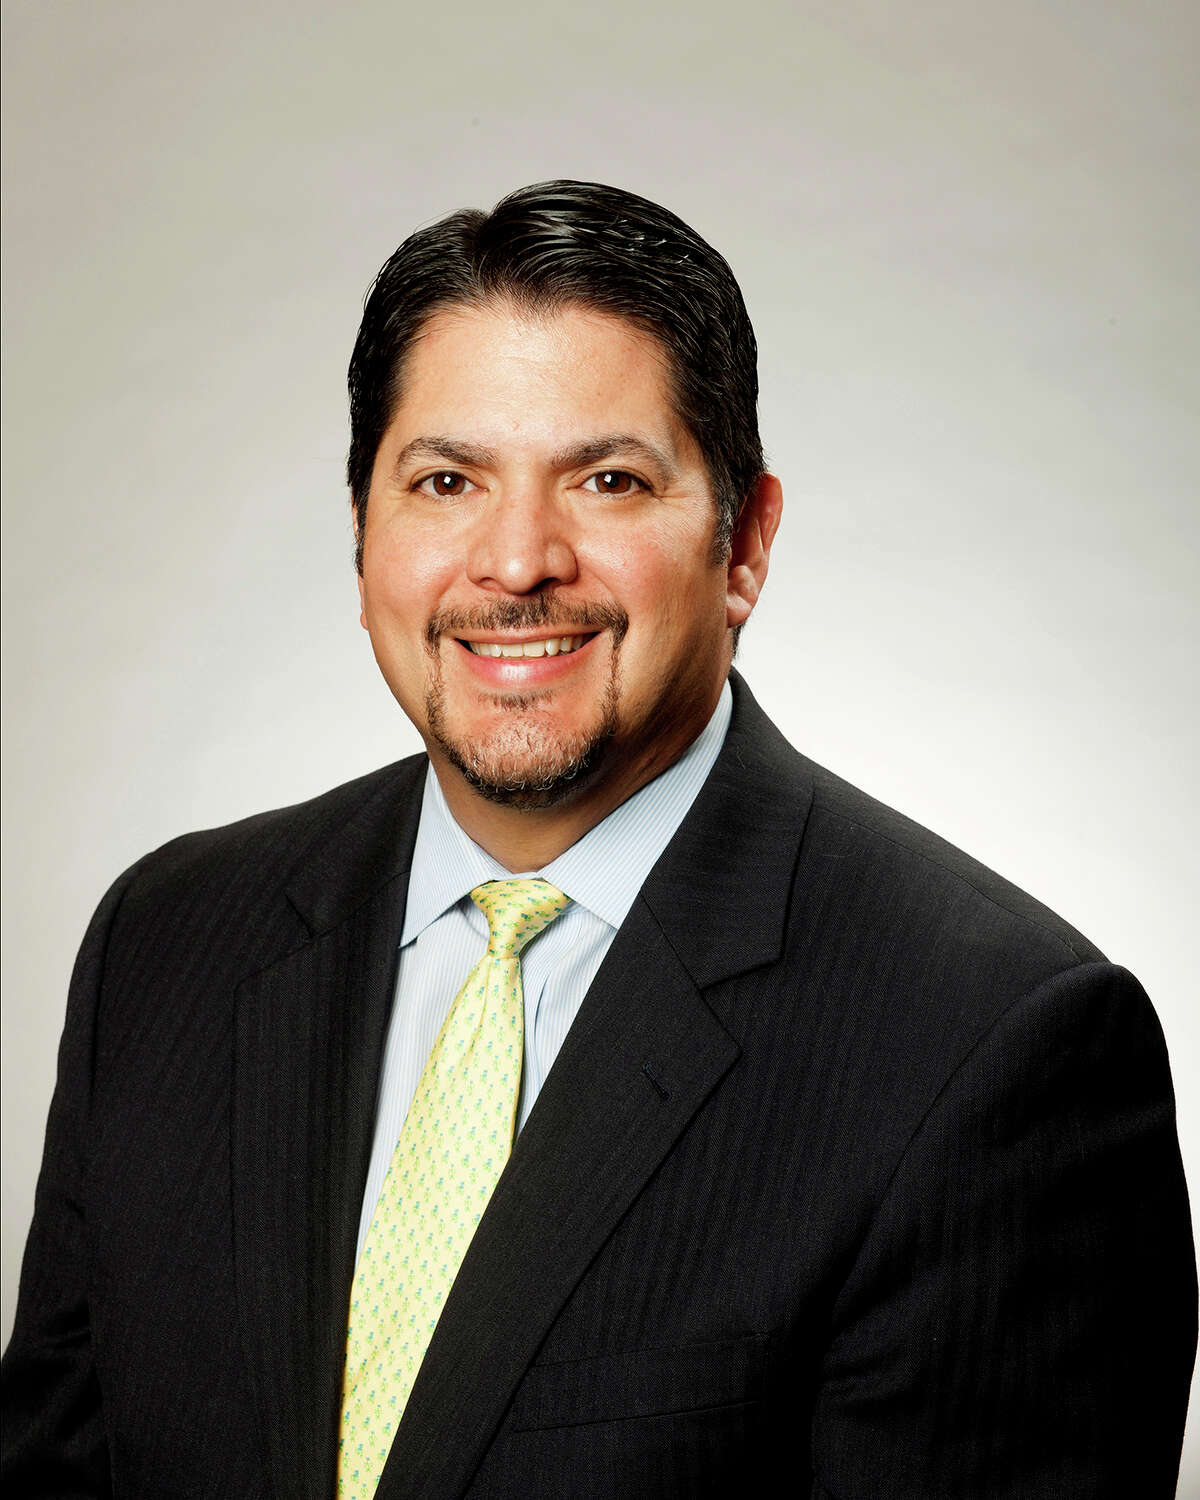 Rudy Garza, CPS Energy interim CEO